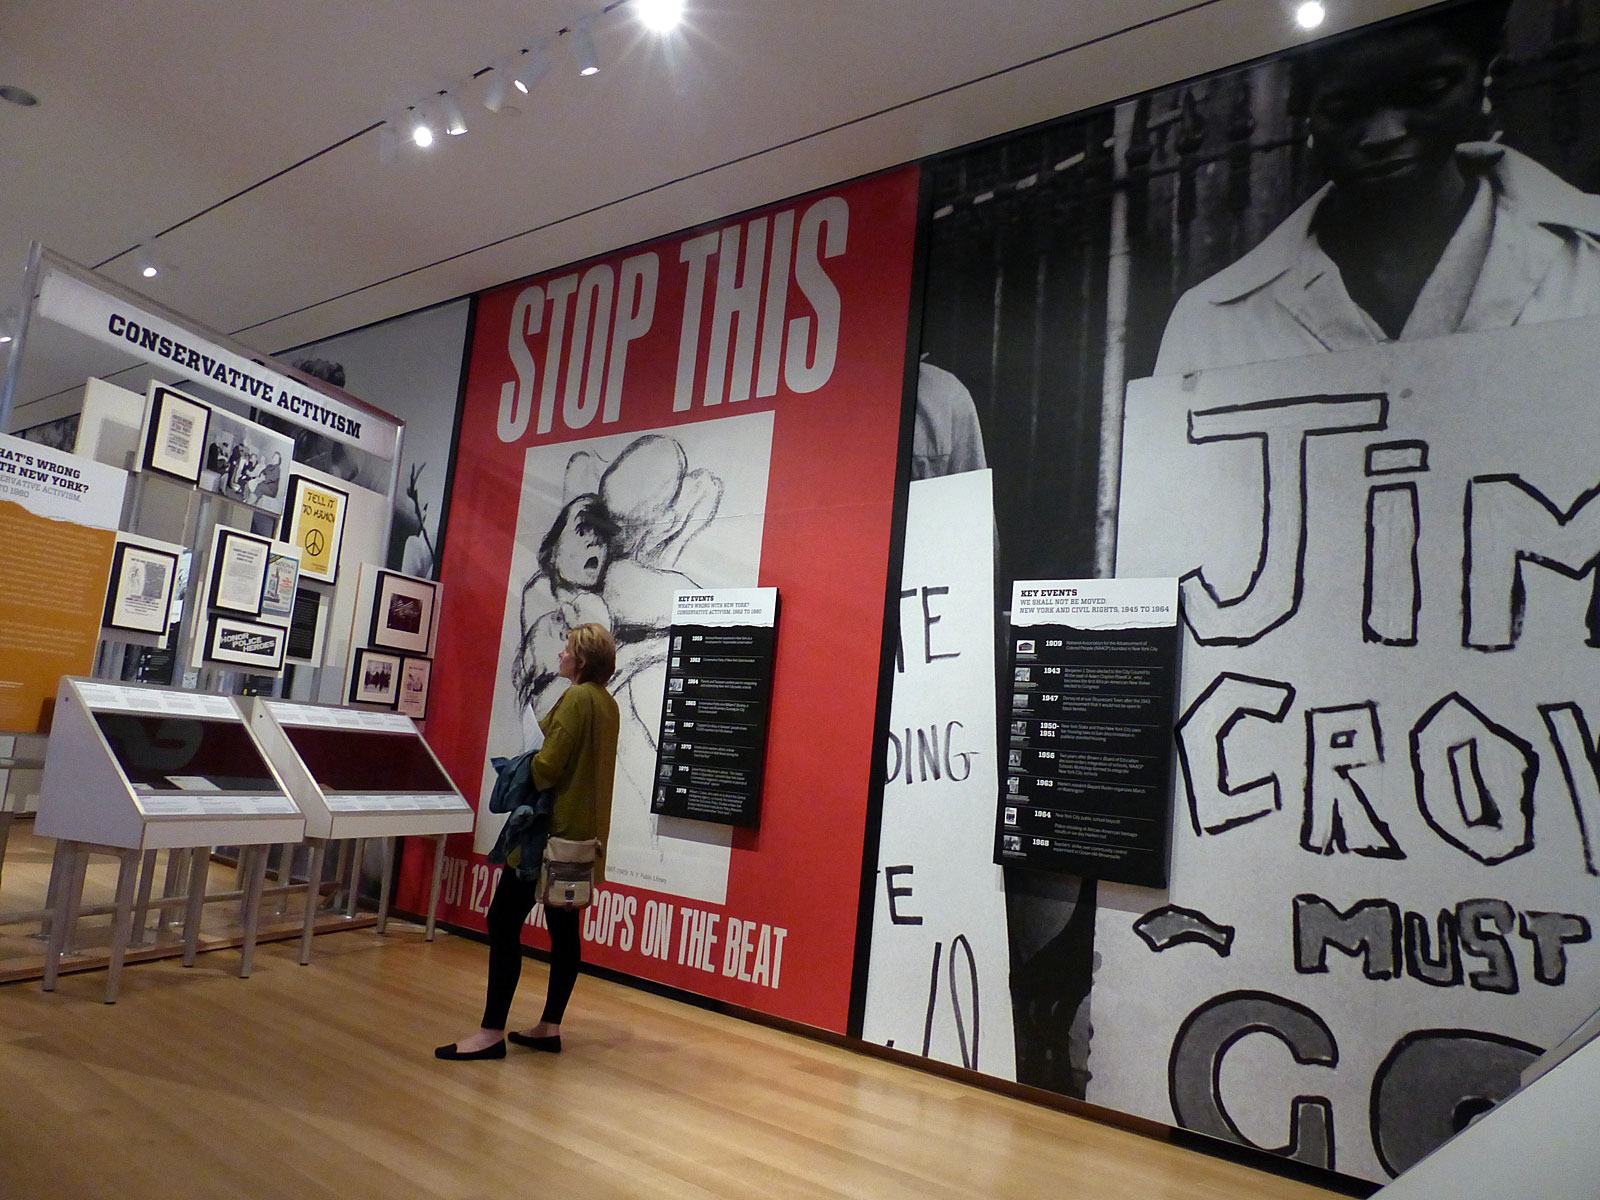 사진은 Activist New York 전시회에서 발췌 한 것입니다. 사진에 묘사 된 섹션은 갤러리의 뉴욕시 민권 및 보수주의 활동 섹션에 있습니다.